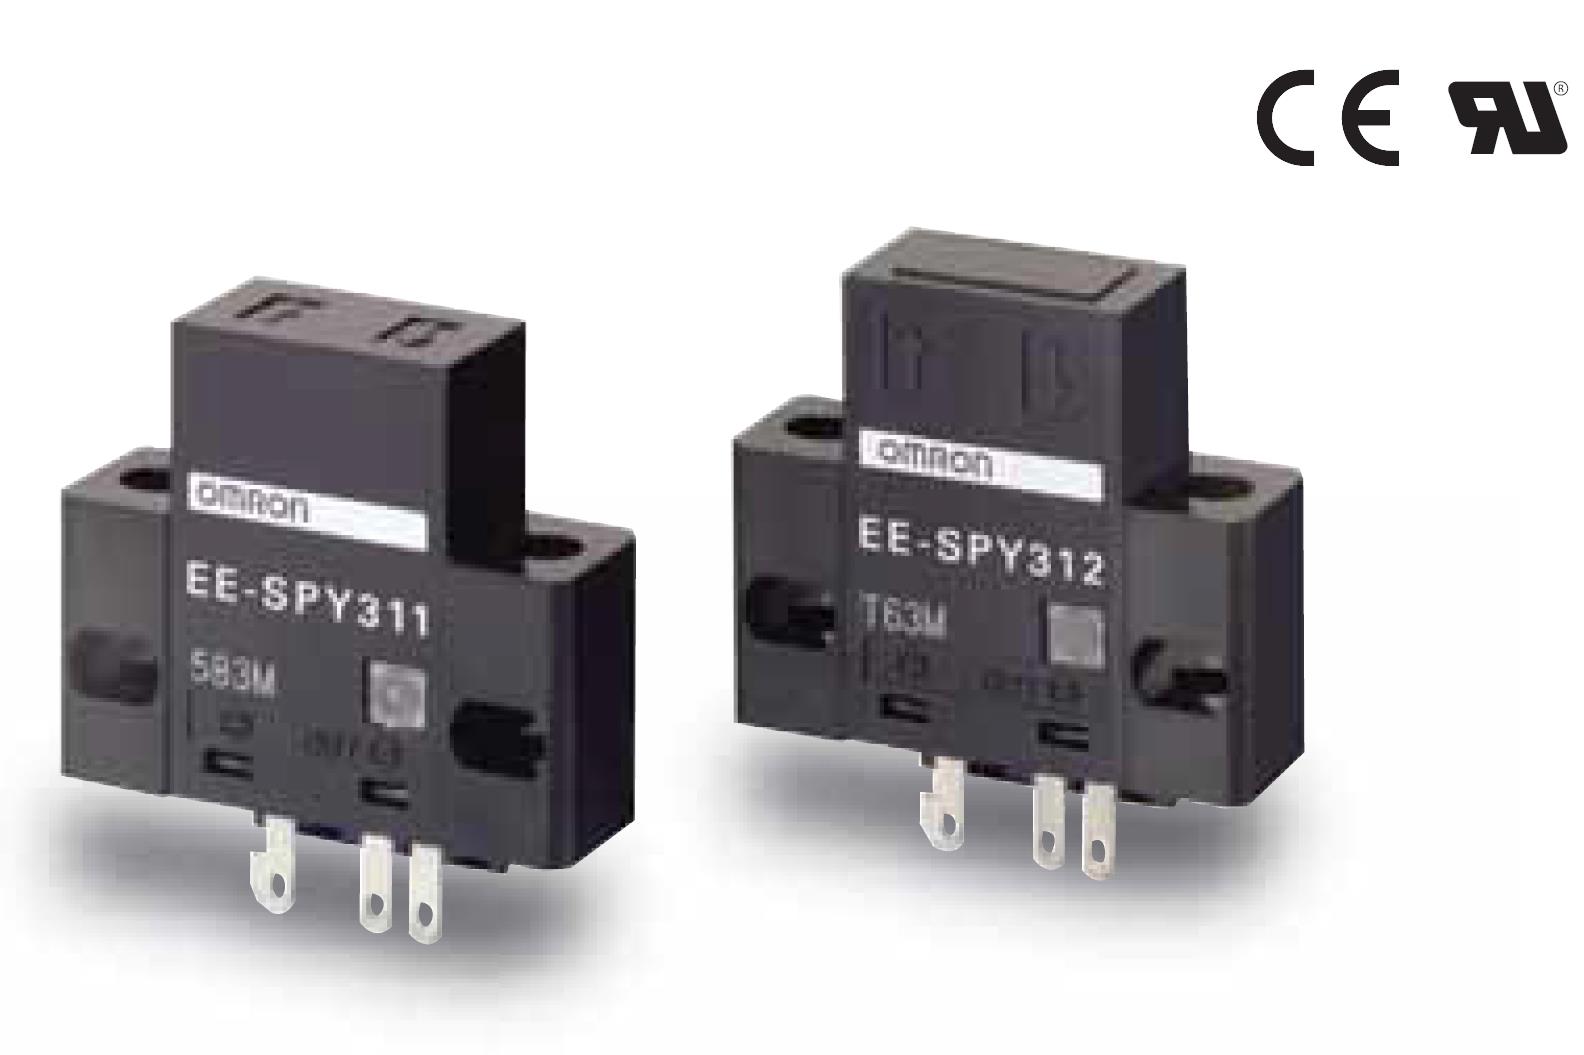 光轴数：108个
带灵敏度调整旋钮的反射型光电传感器EE-SY671